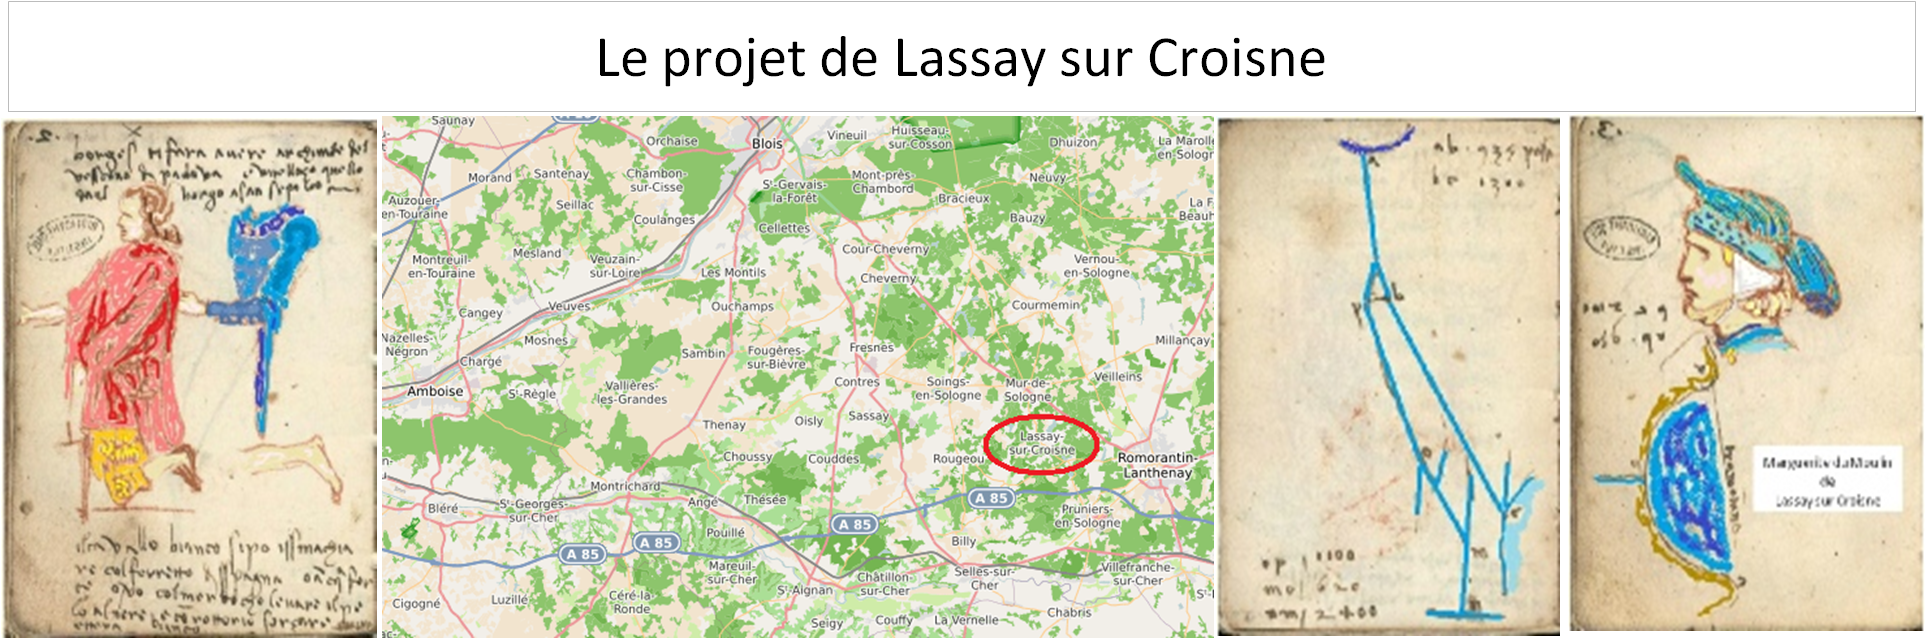 Le projet de Lassay sur Croisne